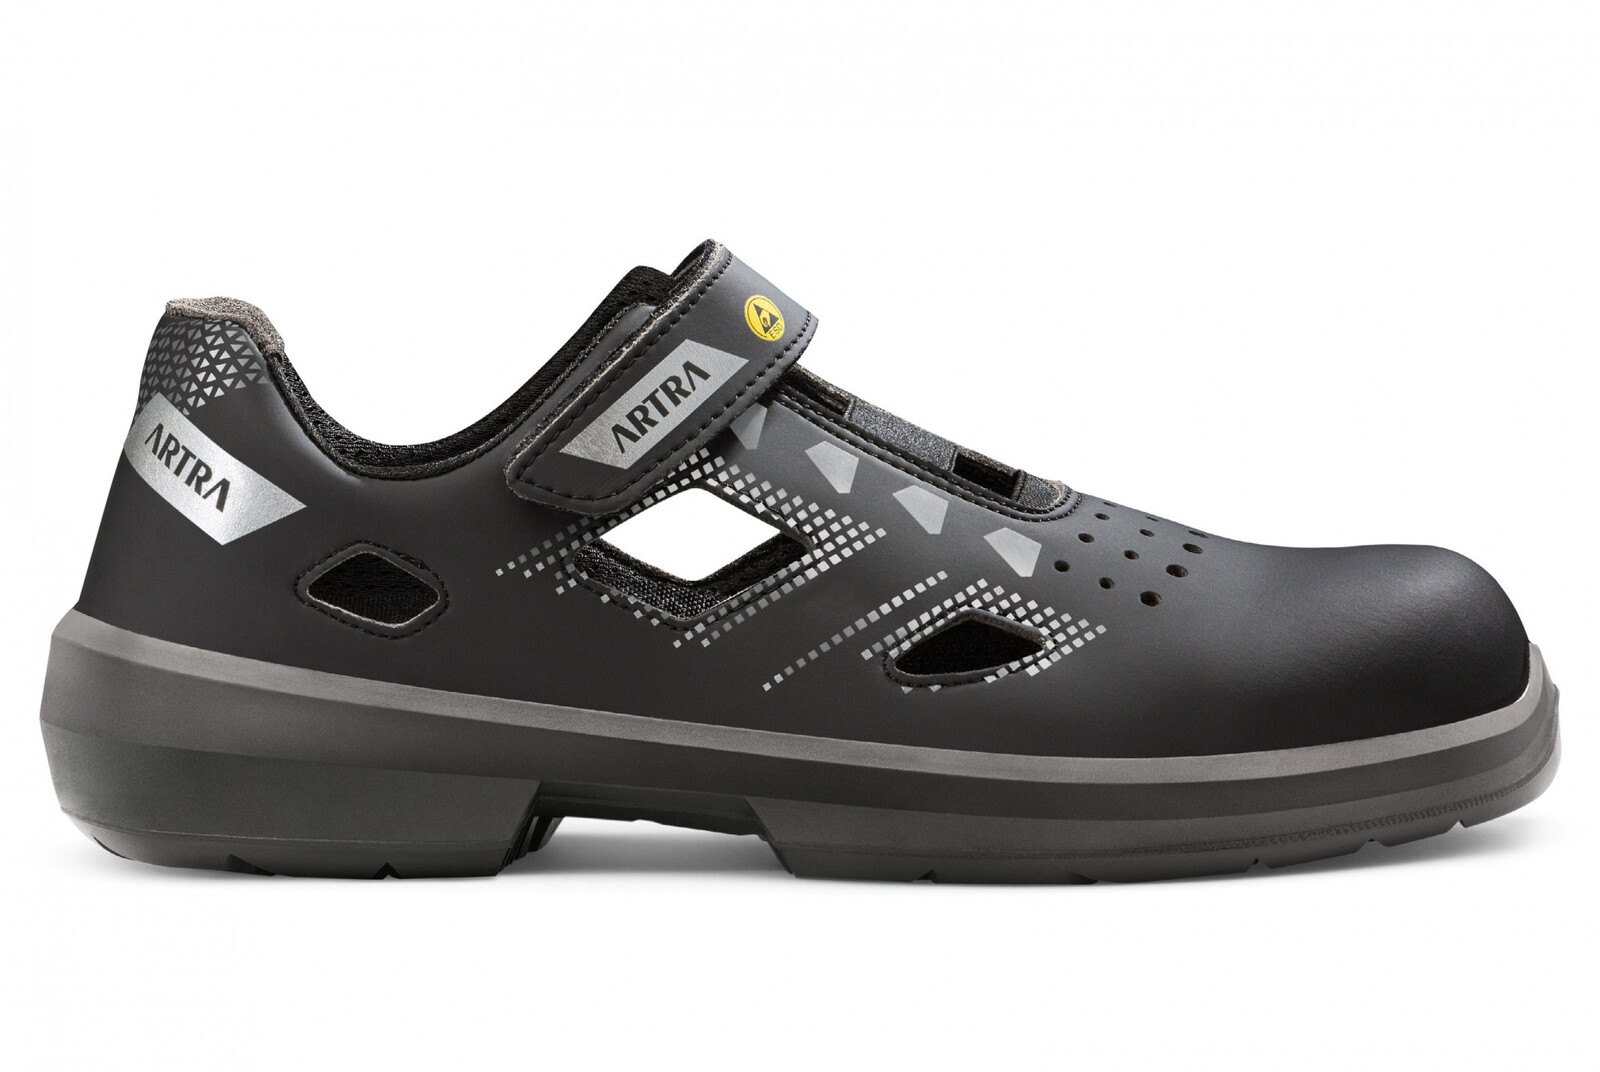 Bezpečnostné sandále Artra Arzo 805 676560 S1 SRC ESD MF - veľkosť: 45, farba: čierna/sivá